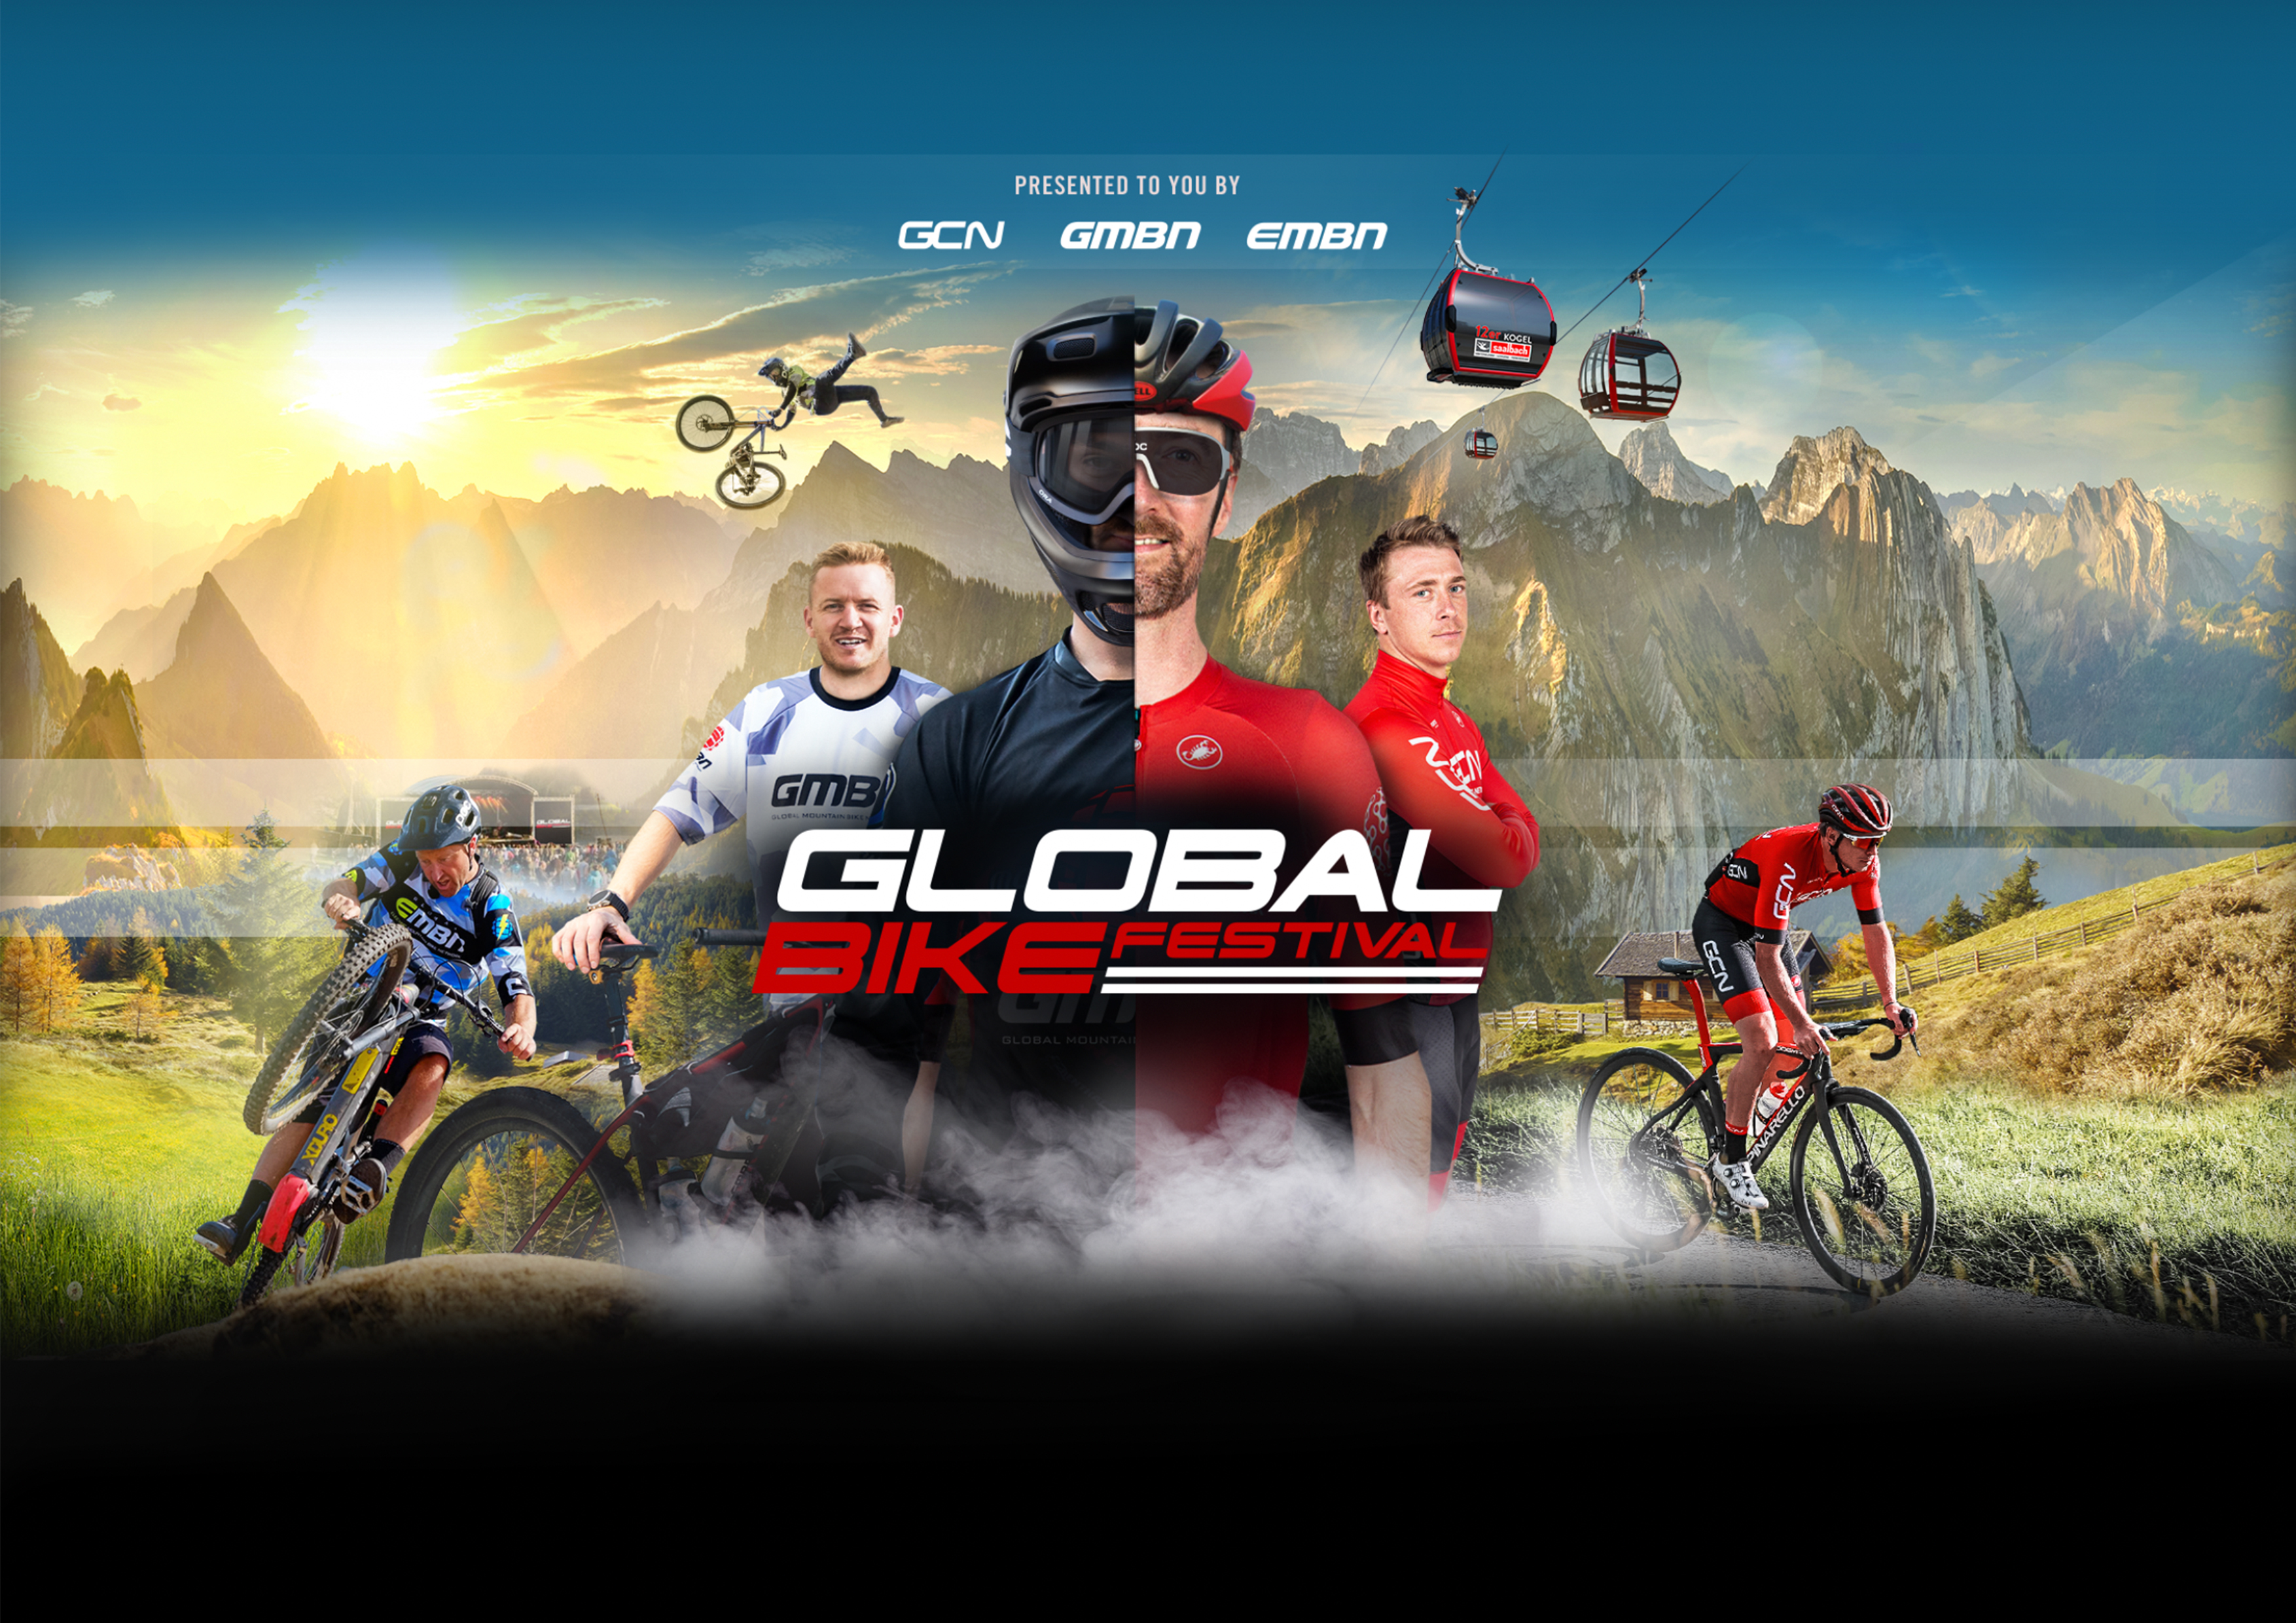 Global Bike Festival 